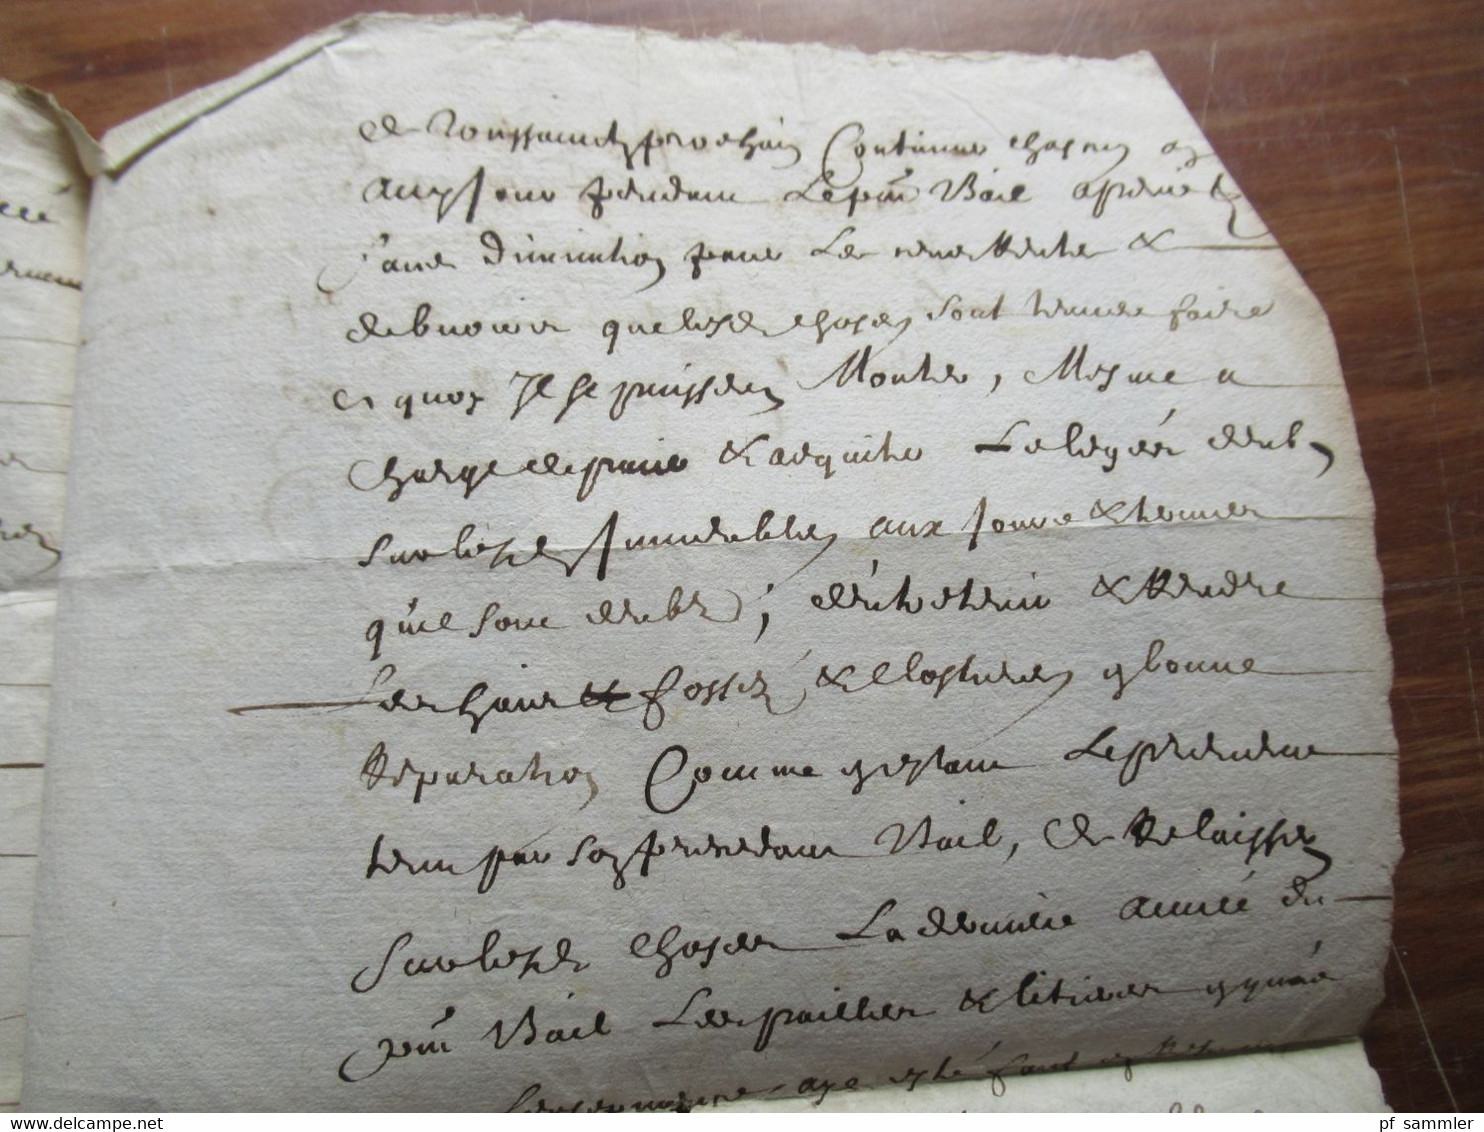 Frankreich Brief / Dokument um 1670 / 17. Jahrhundert mit Autograph / Schnörkelunterschrift!